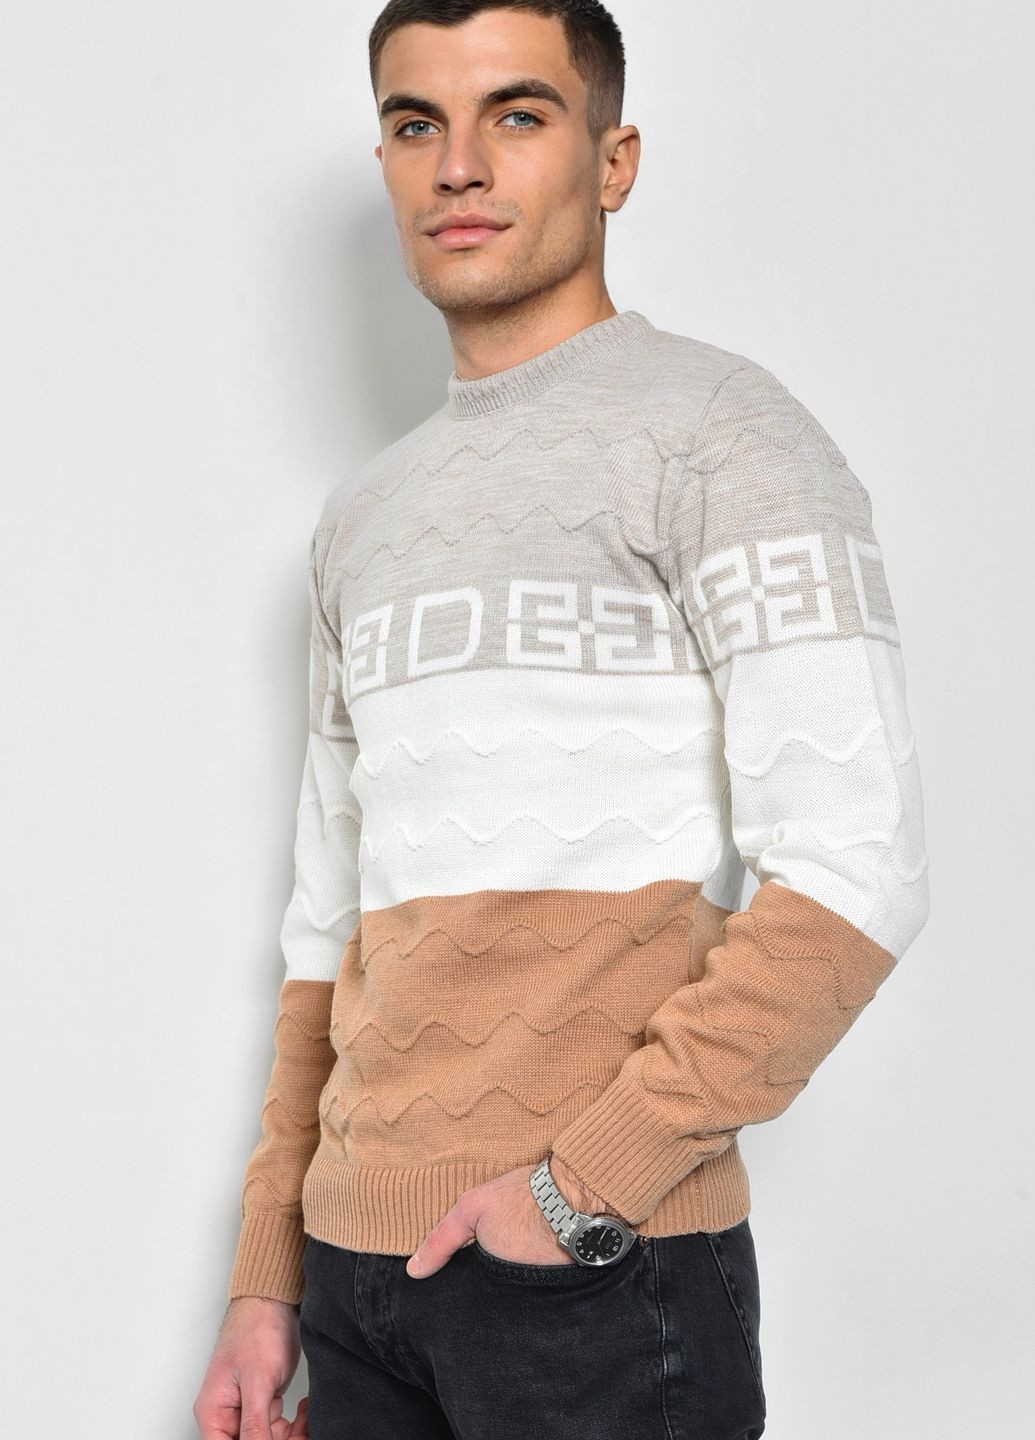 Светло-коричневый демисезонный свитер мужской светло-коричневого цвета пуловер Let's Shop